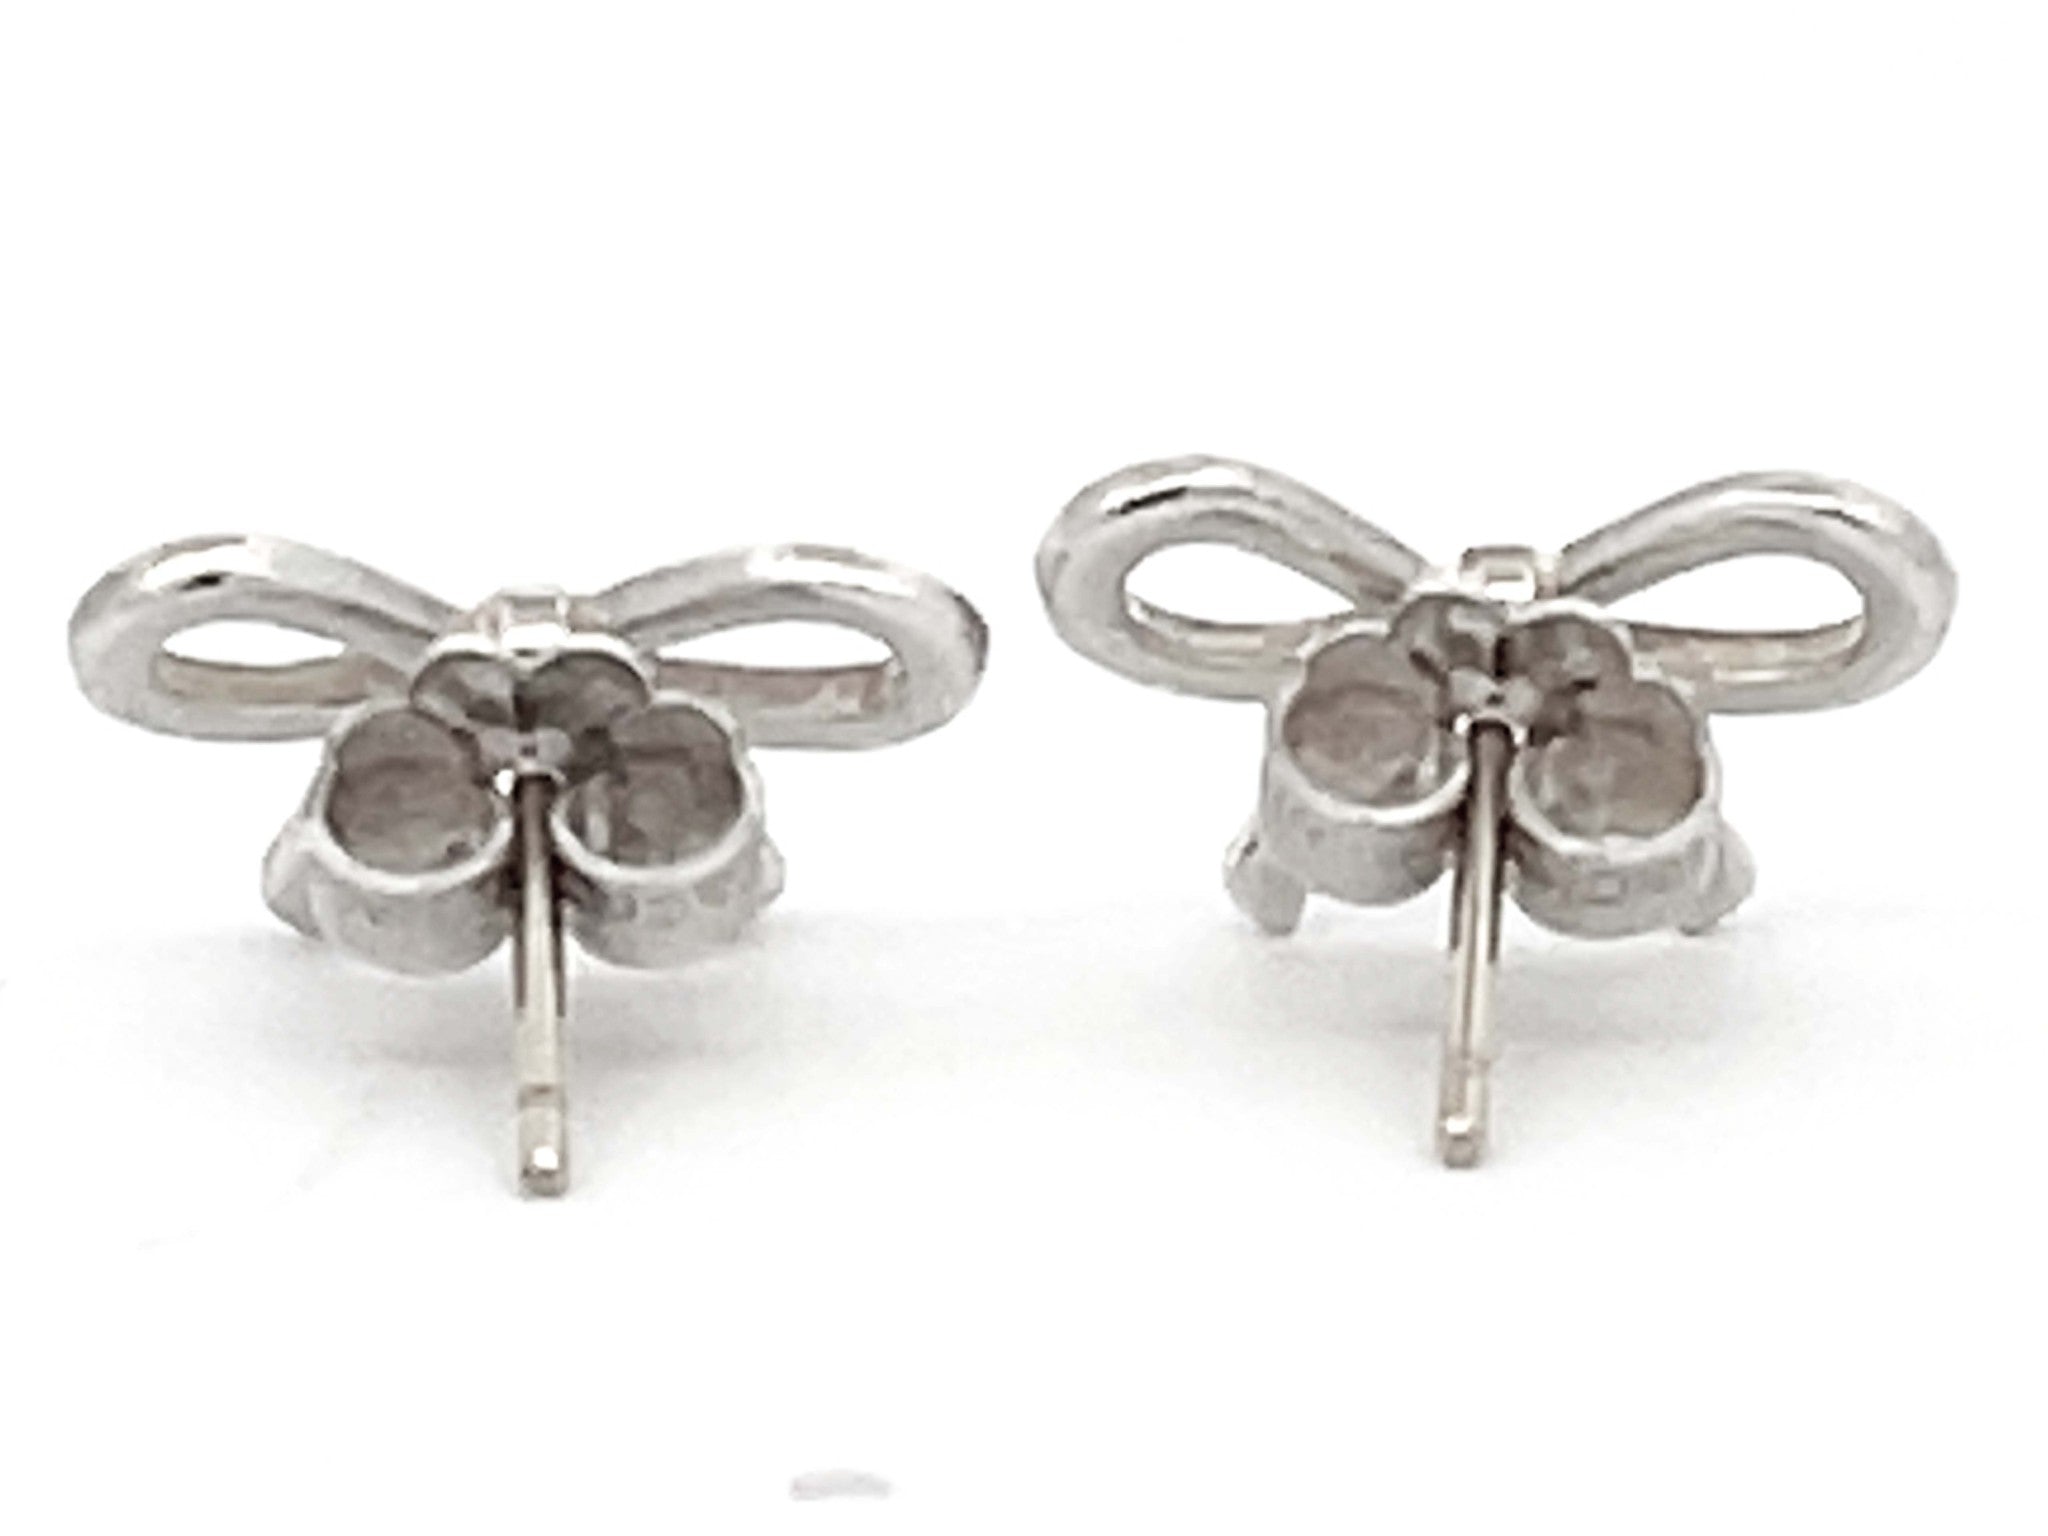 Tiffany & Co. Bowtie Earrings in Sterling Silver